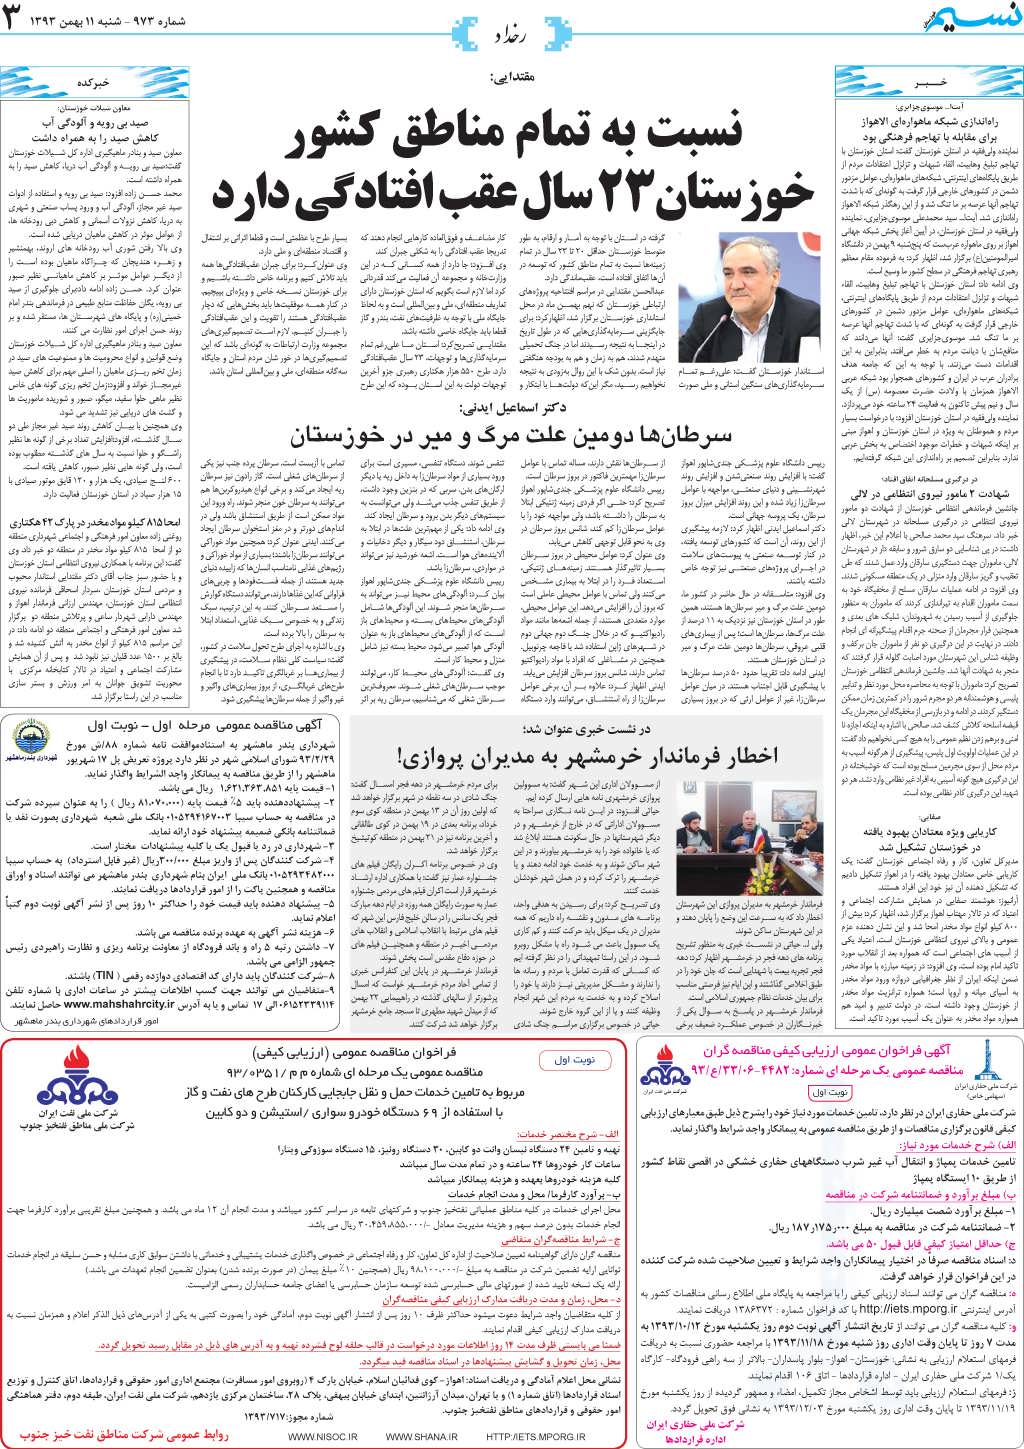 صفحه رخداد روزنامه نسیم شماره 973